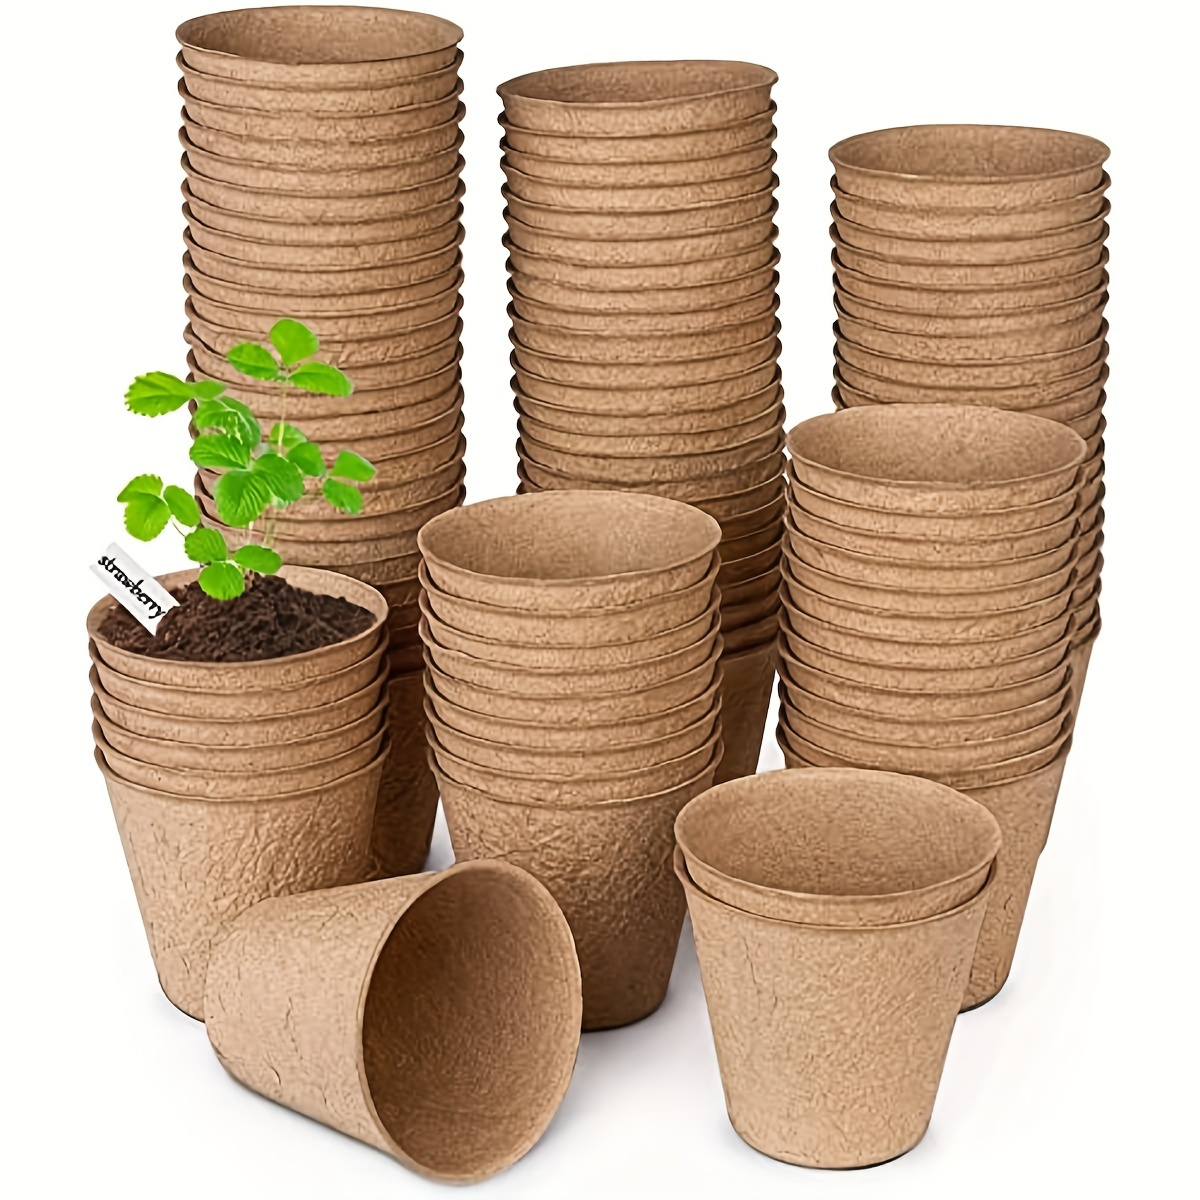 Pots de plantes 100pcs, pots de semis en plastique intérieurs de 4 pouces /  10 cm, pots de pépinière souples, pots de démarrage bicolores, pots de  semis de graines de fleurs